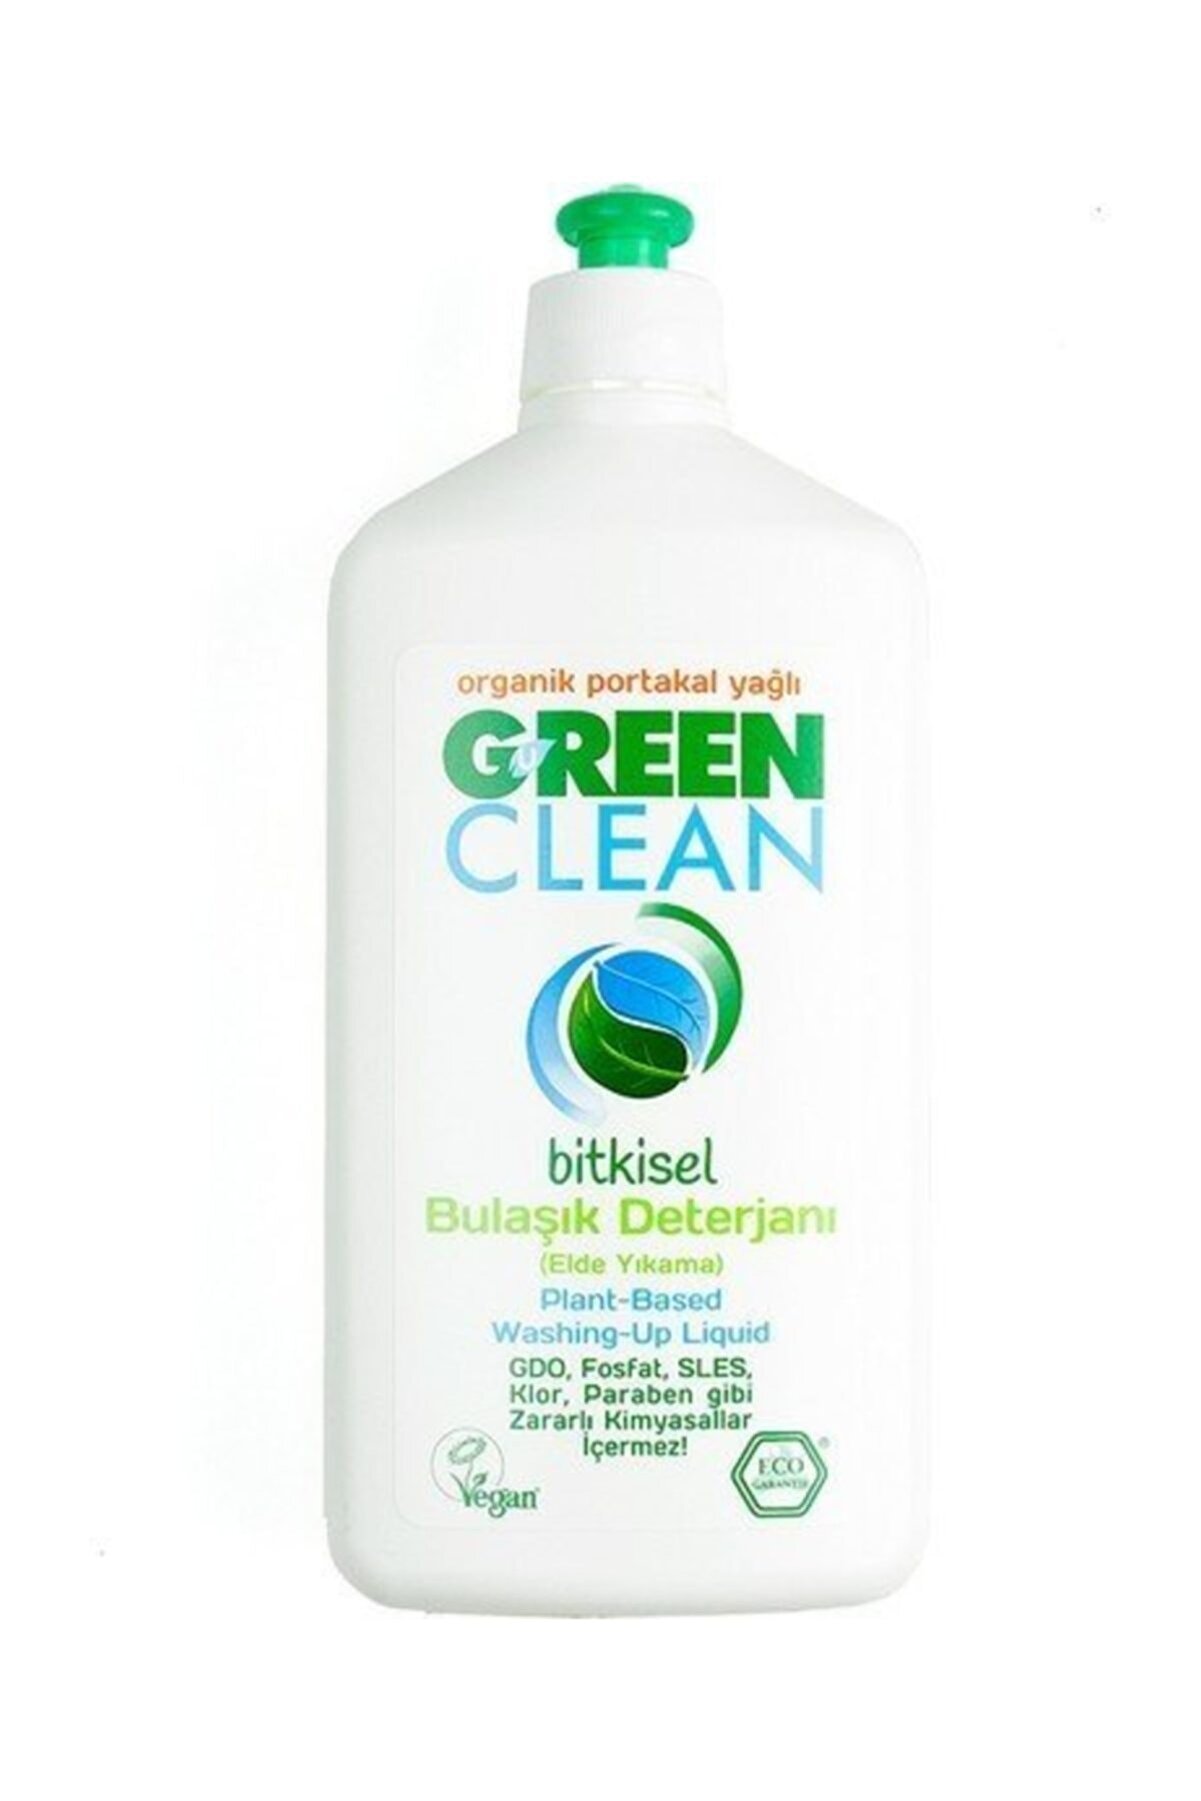 Green Clean Organik Portakal Yağlı Bulaşık Deterjanı 500 ml